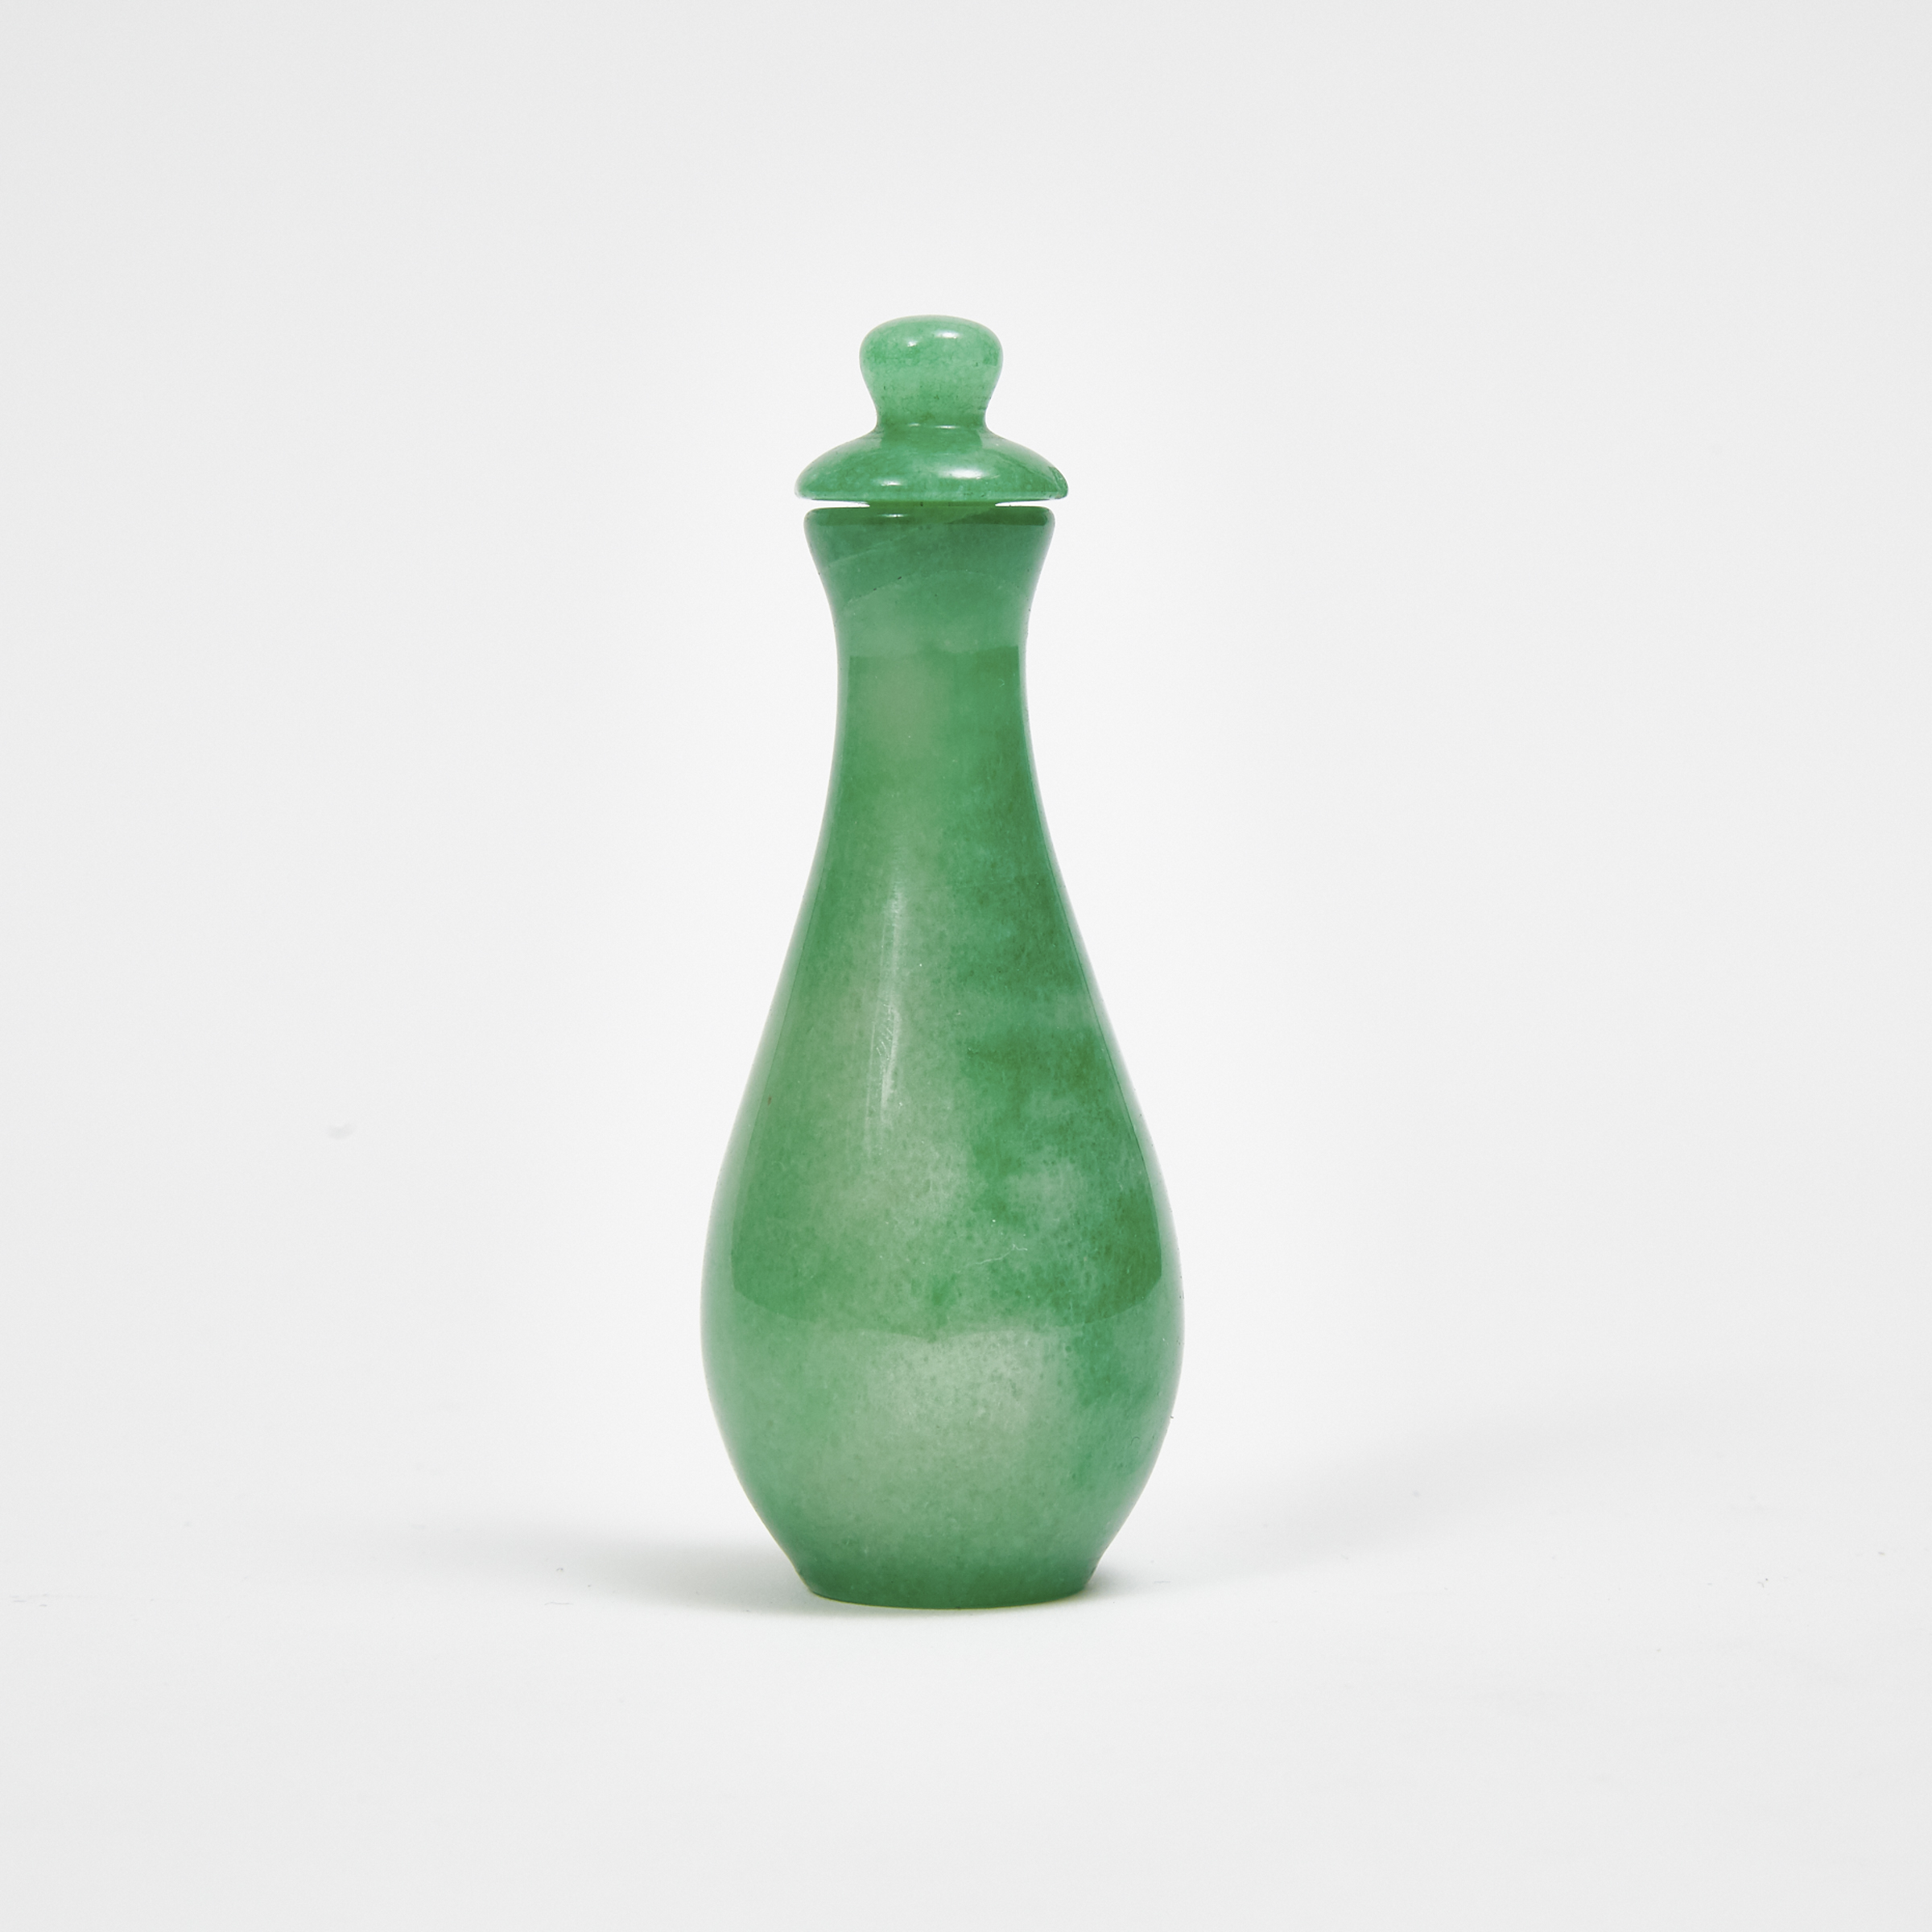 A Miniature Jadeite Lidded Vase on Stand